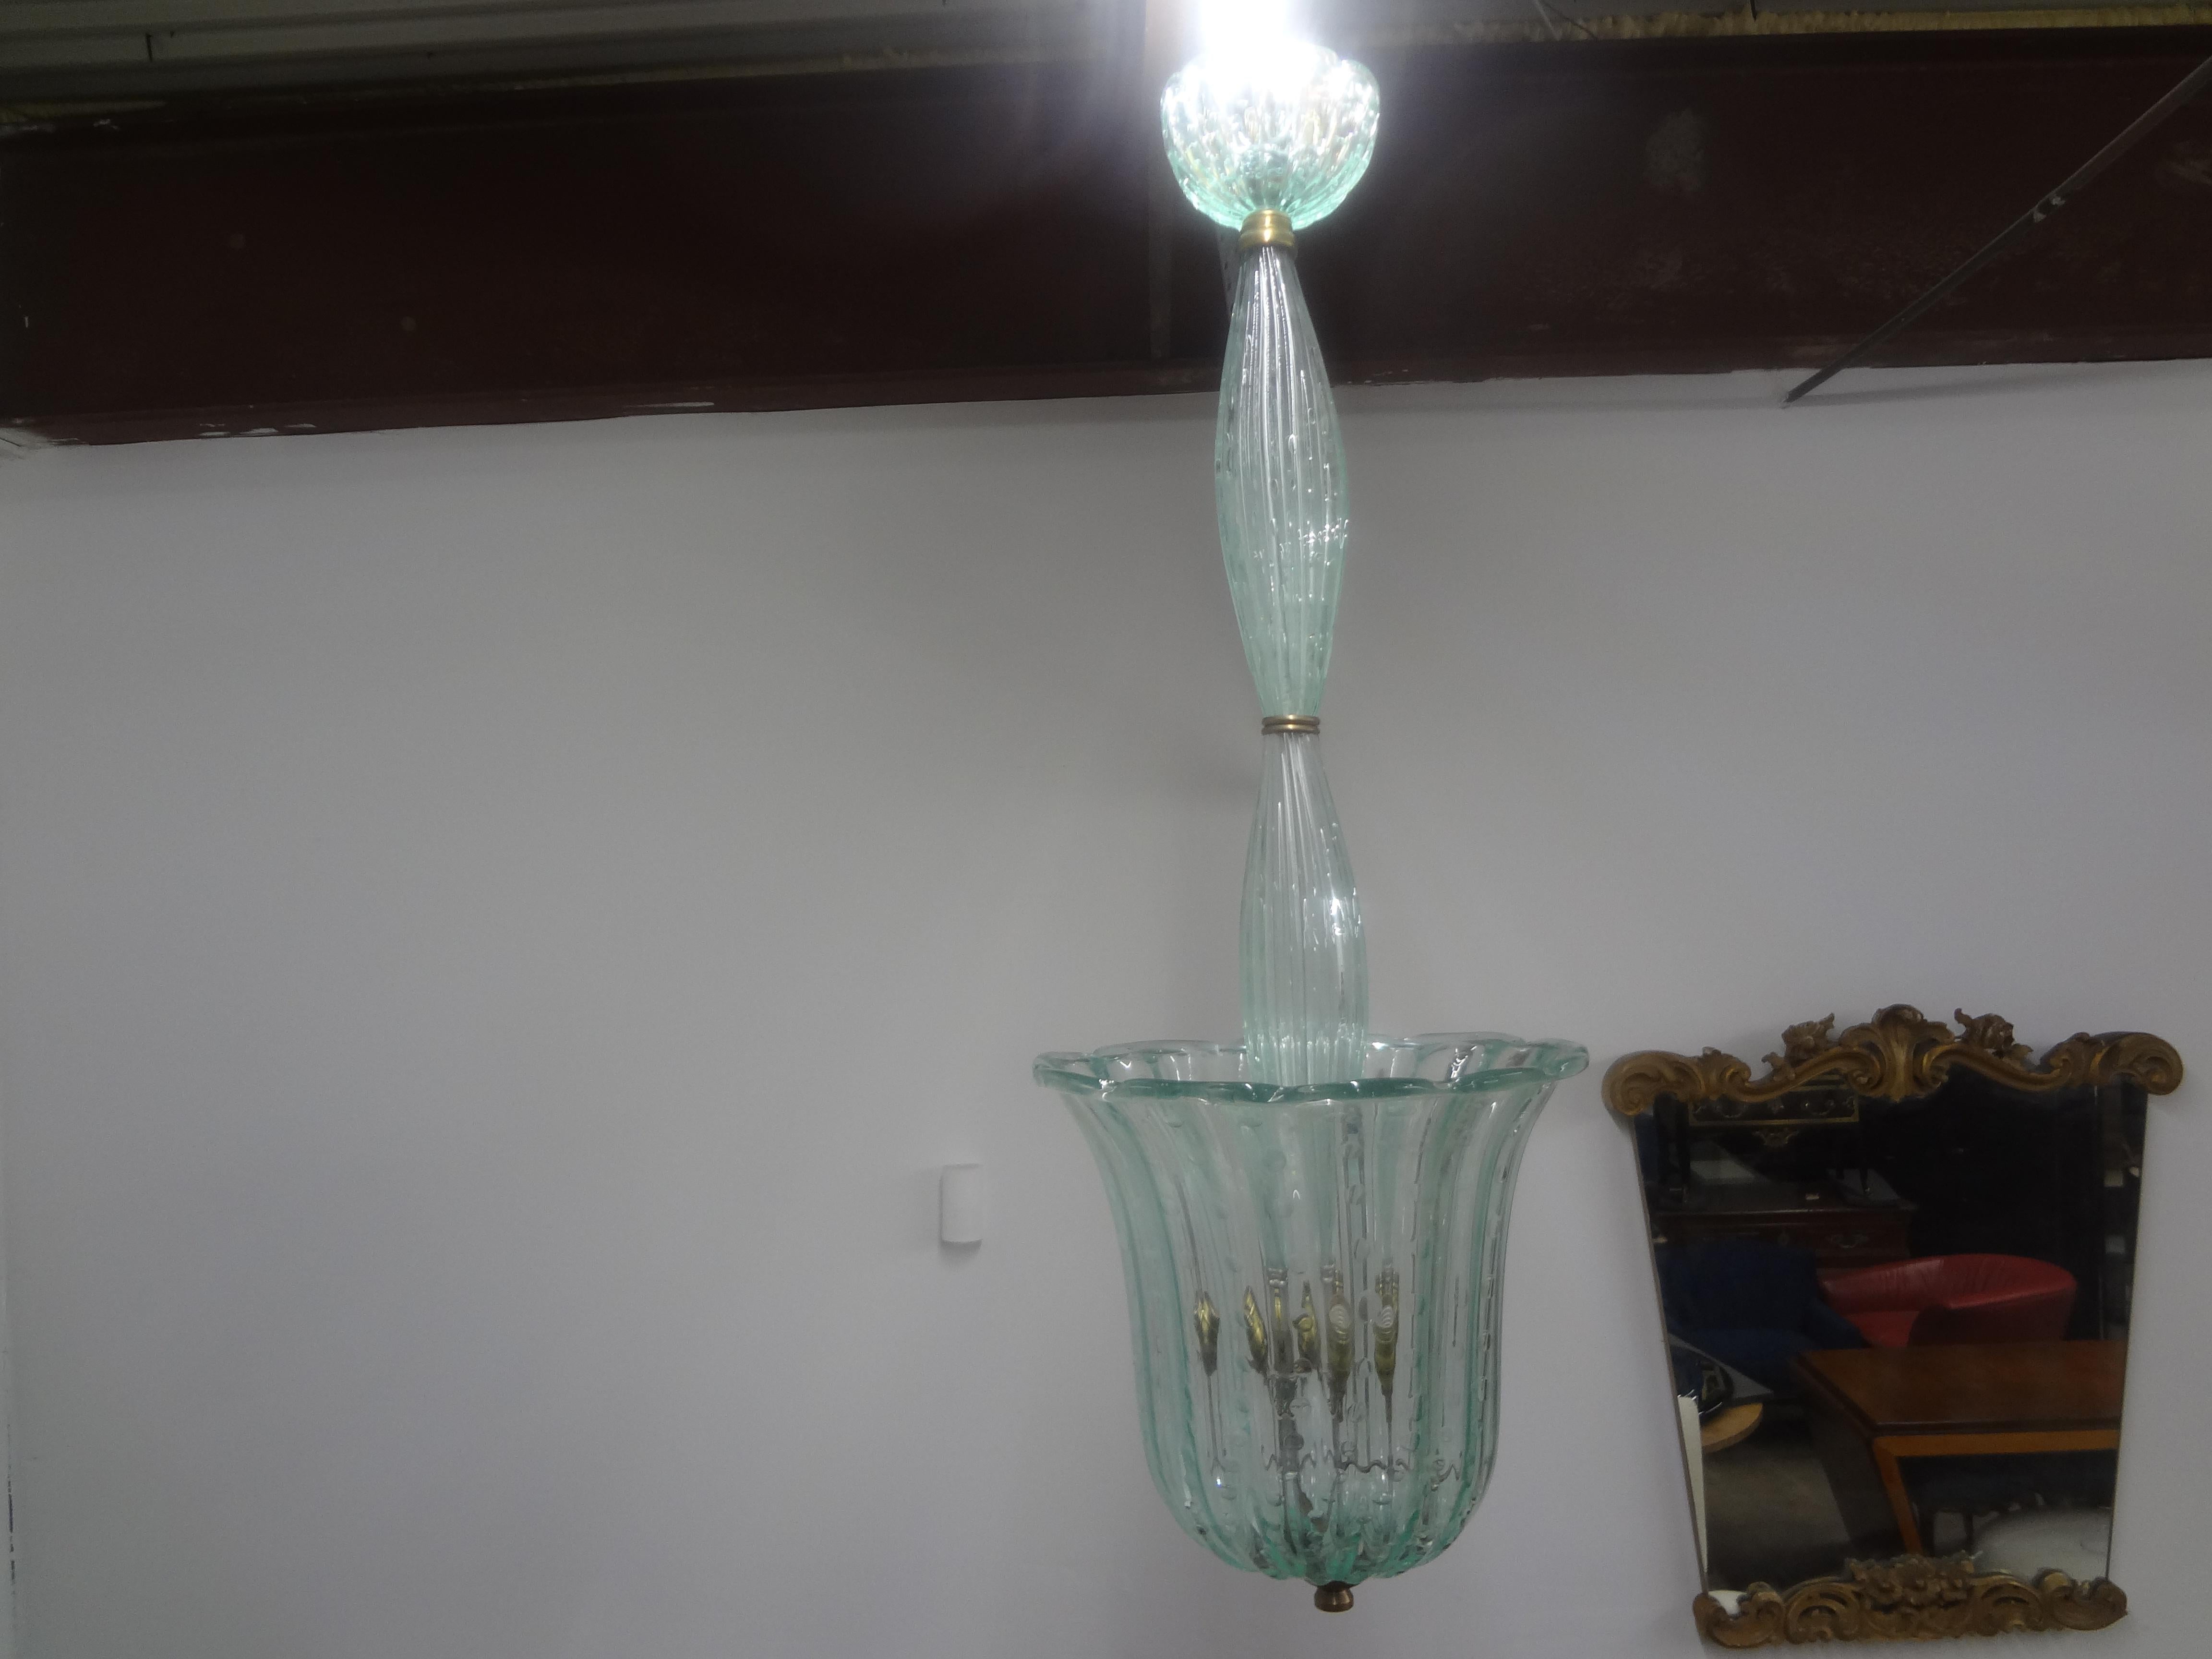 Lanterne Vintage en verre de Murano par Barovier&Toso.
Cette jolie lanterne en verre de Murano du milieu du siècle est faite d'un verre soufflé vert tendre avec des bulles contrôlées accentuées par du laiton. 
Cette inhabituelle lanterne en verre de